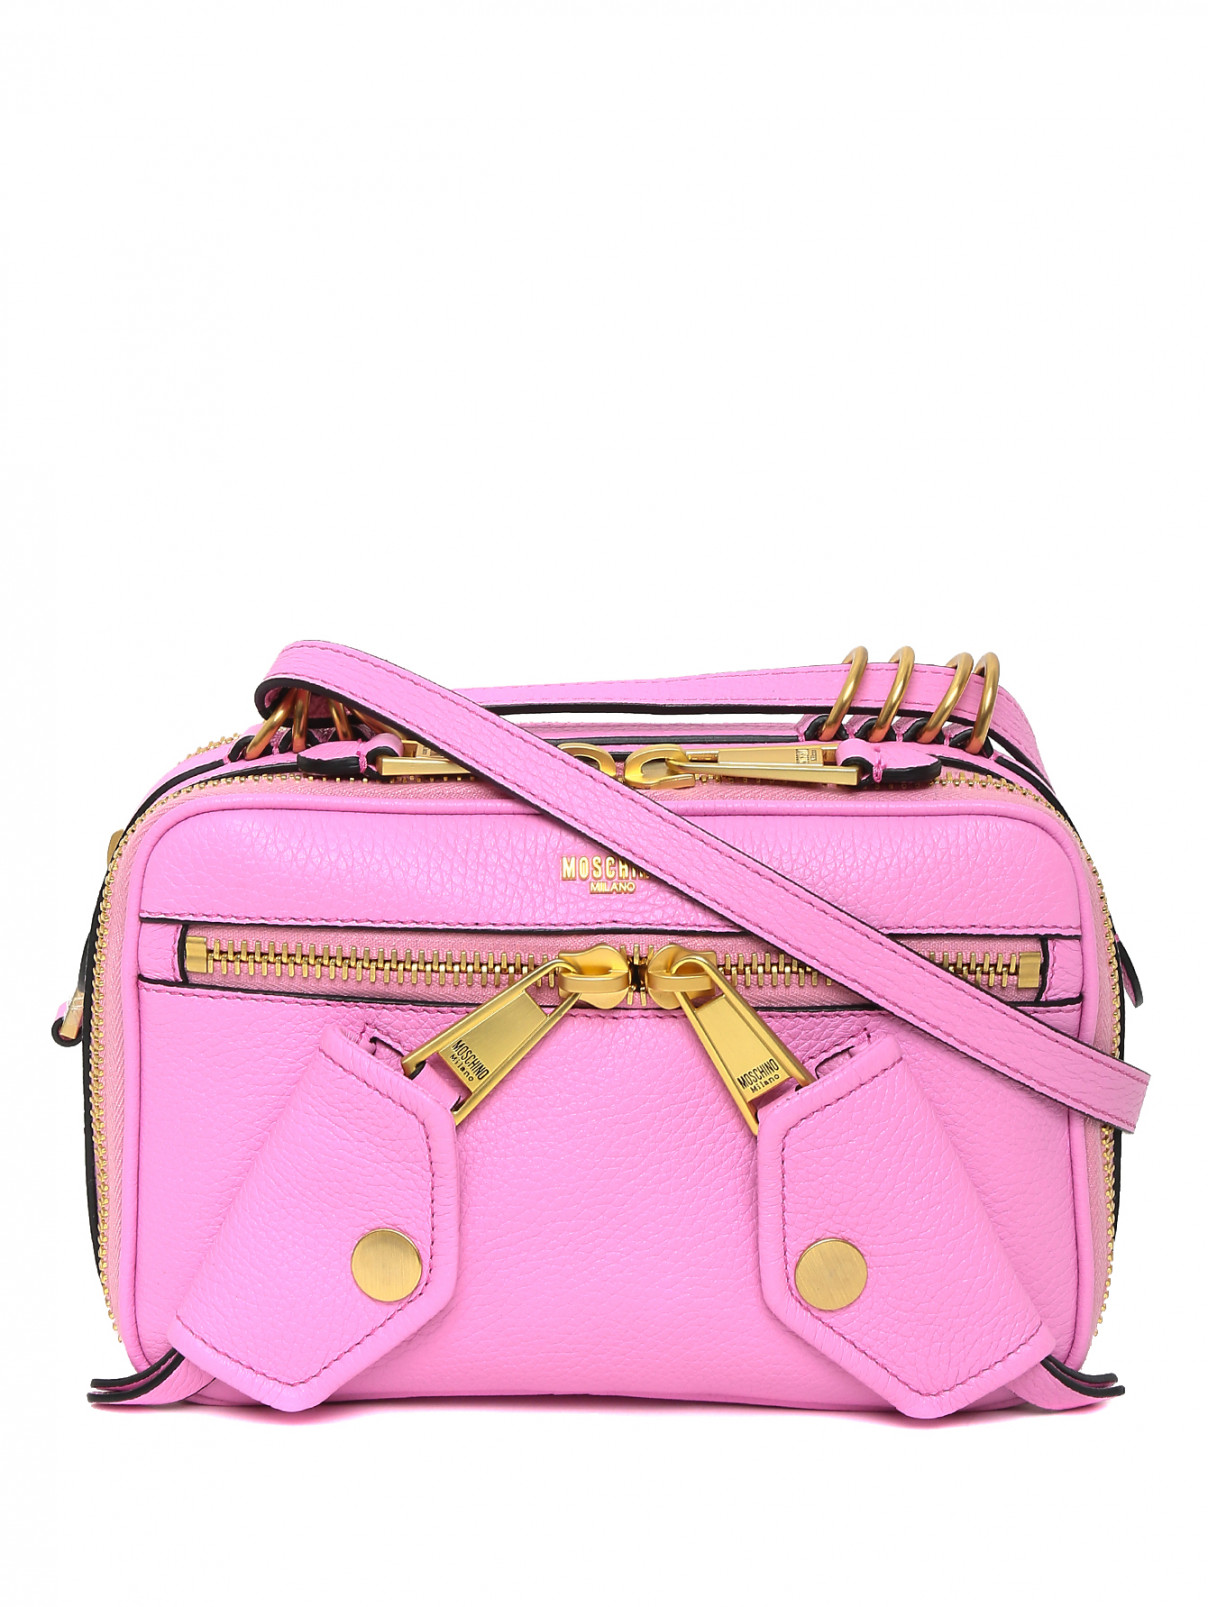 Сумка из фактурной кожи с металлической фурнитурой Moschino Couture  –  Общий вид  – Цвет:  Розовый